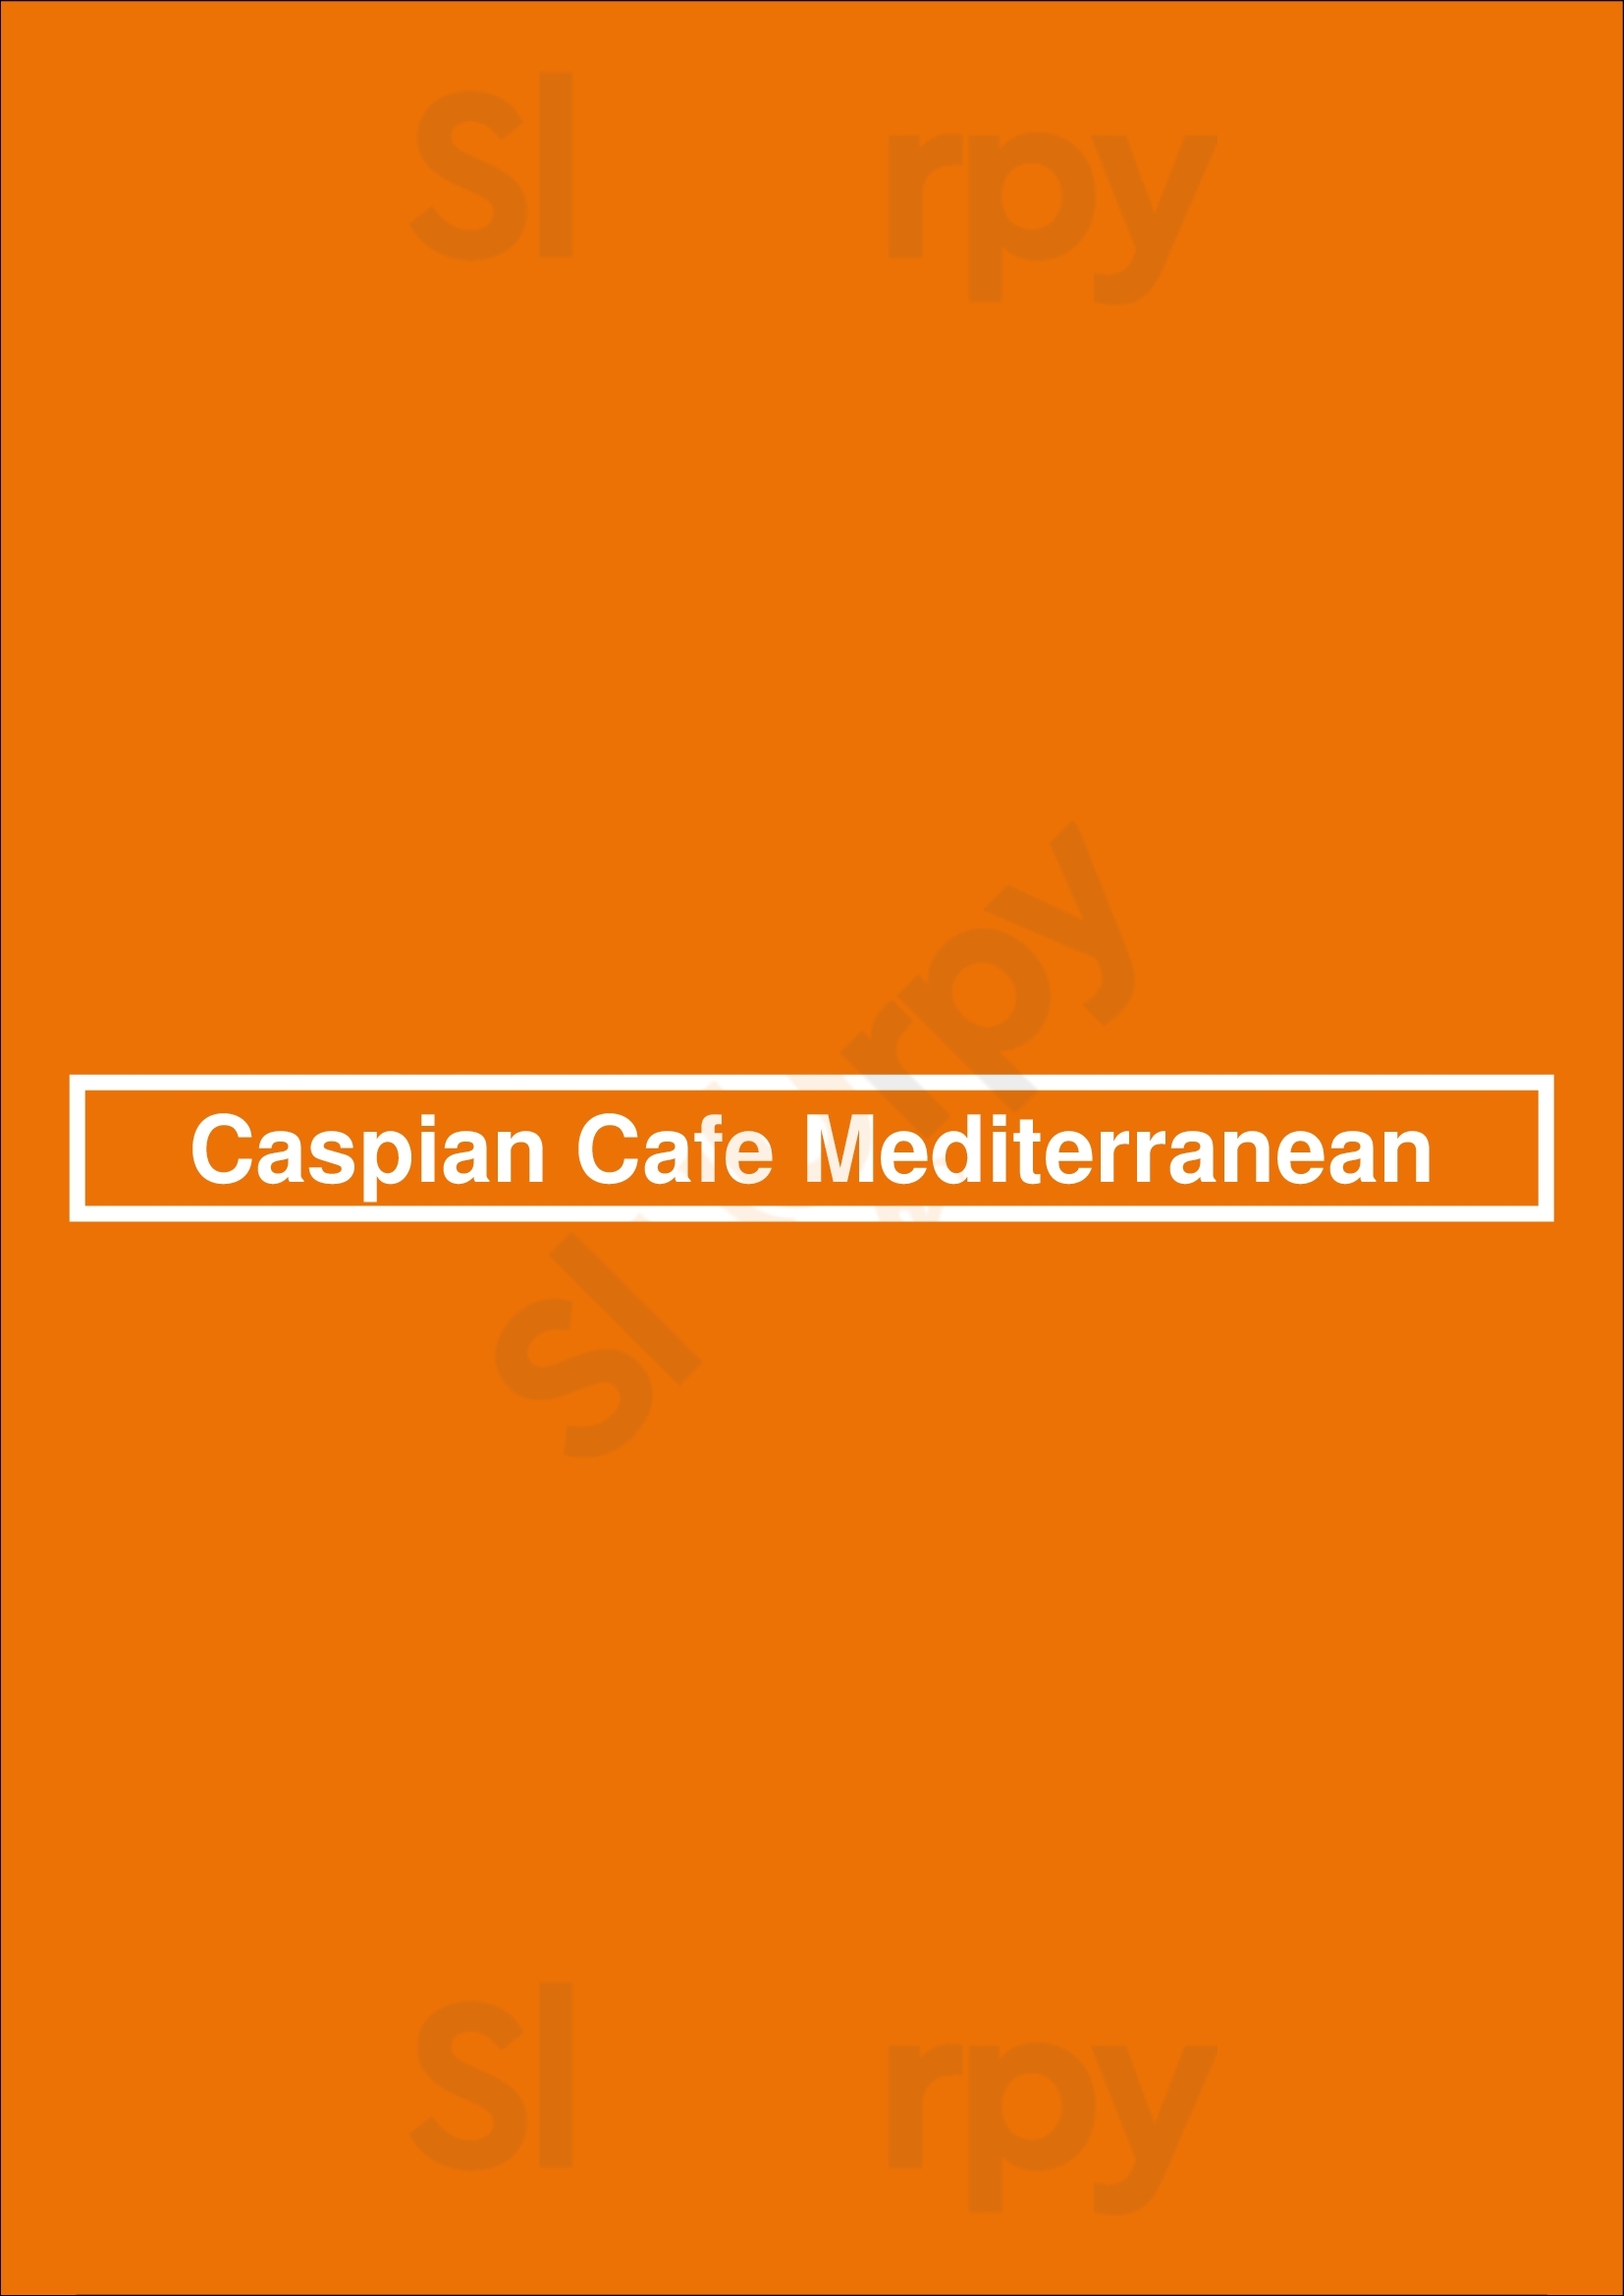 Caspian Cafe Mediterranean Colorado Springs Menu - 1